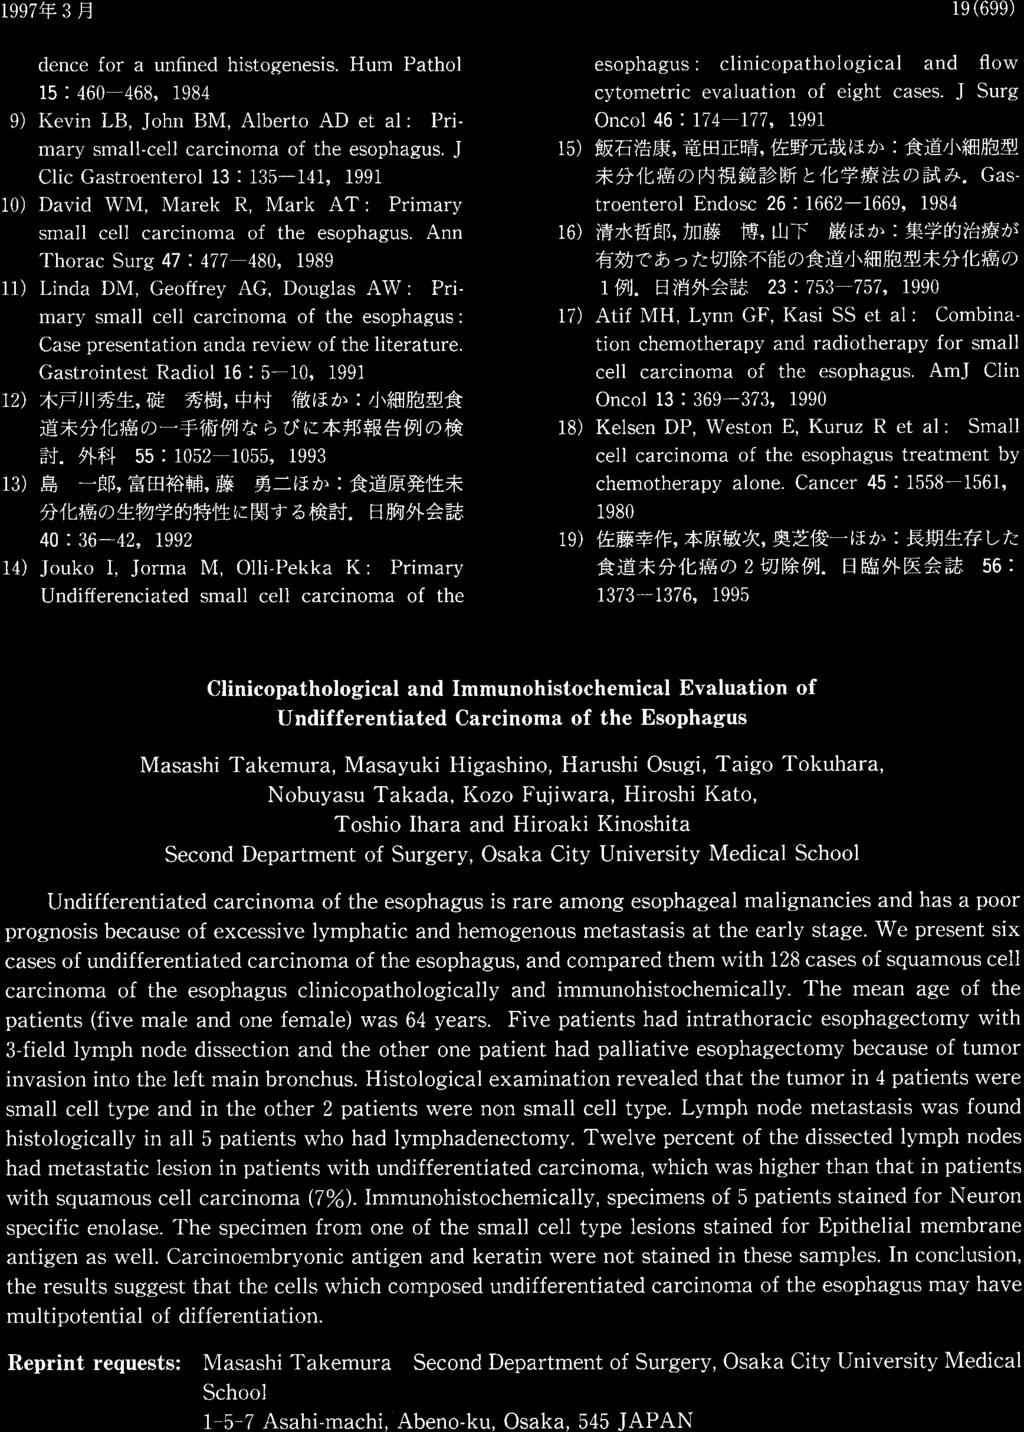 Clinicopathological and Immunohistochemical Evaluation of Undifferentiated Carcinoma of the Esophagus Masashi Takemura, Masayuki Higashino, Harushi Osugi, Taigo Tokuhara, Nobuyasu Takada, Kozo